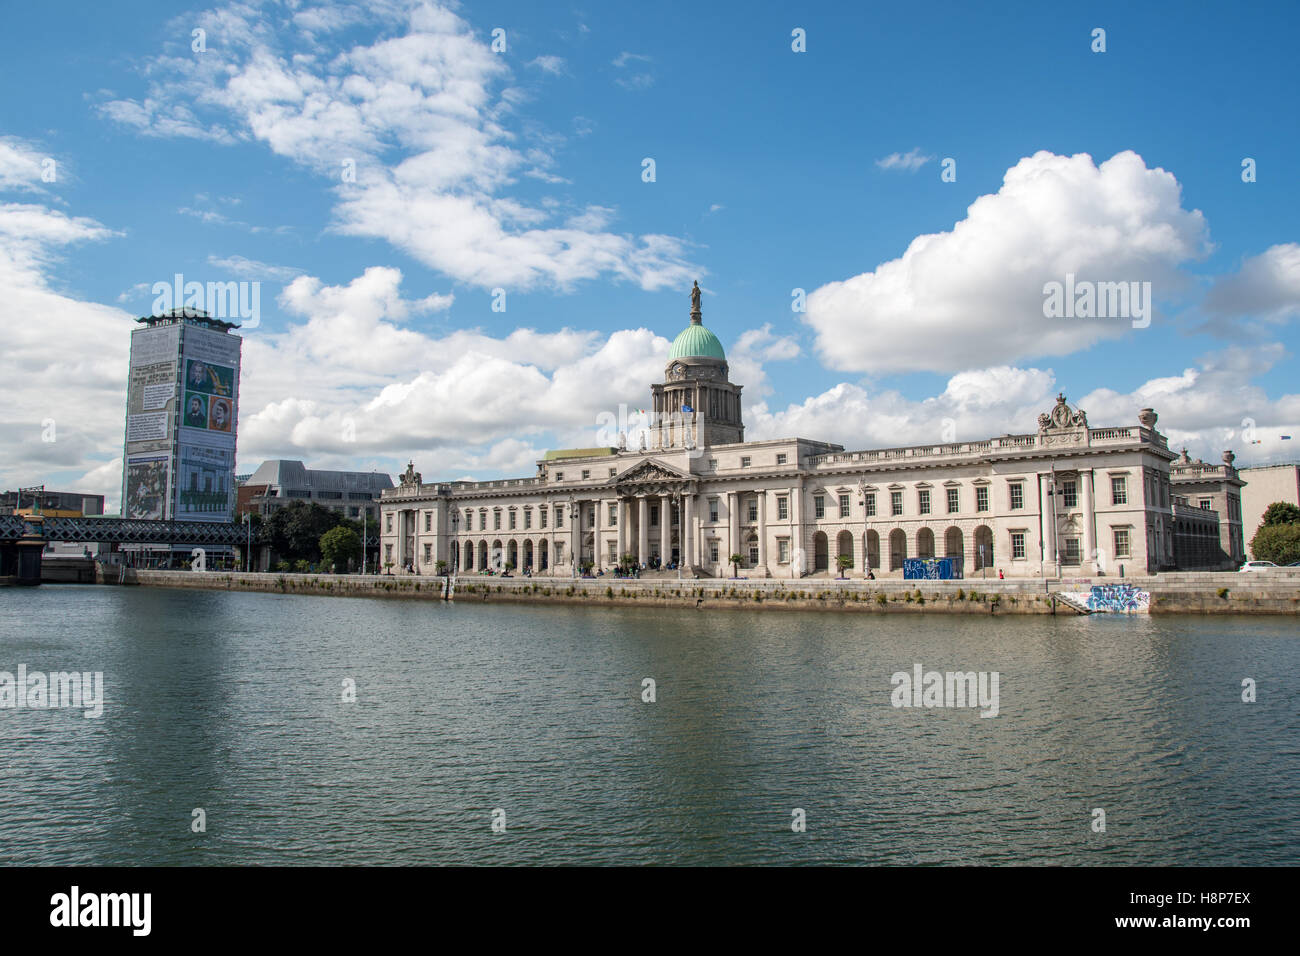 Dublino, Irlanda- La Custom House, neoclassico edificio del XVIII secolo si trova a Dublino, in Irlanda che ospita il dipartimento dell'alloggiamento. Foto Stock